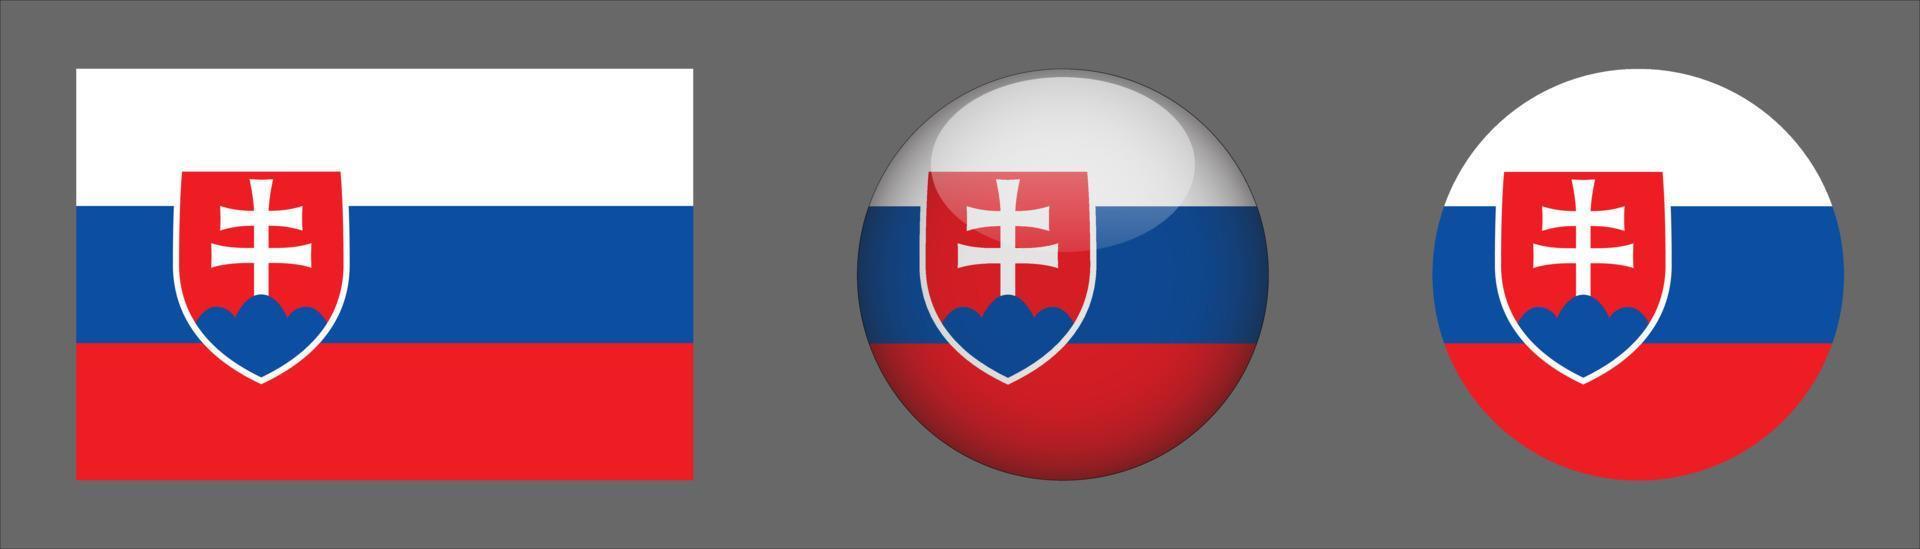 coleção do conjunto de bandeiras da Eslováquia, proporção do tamanho original, 3d arredondado e plano arredondado. vetor